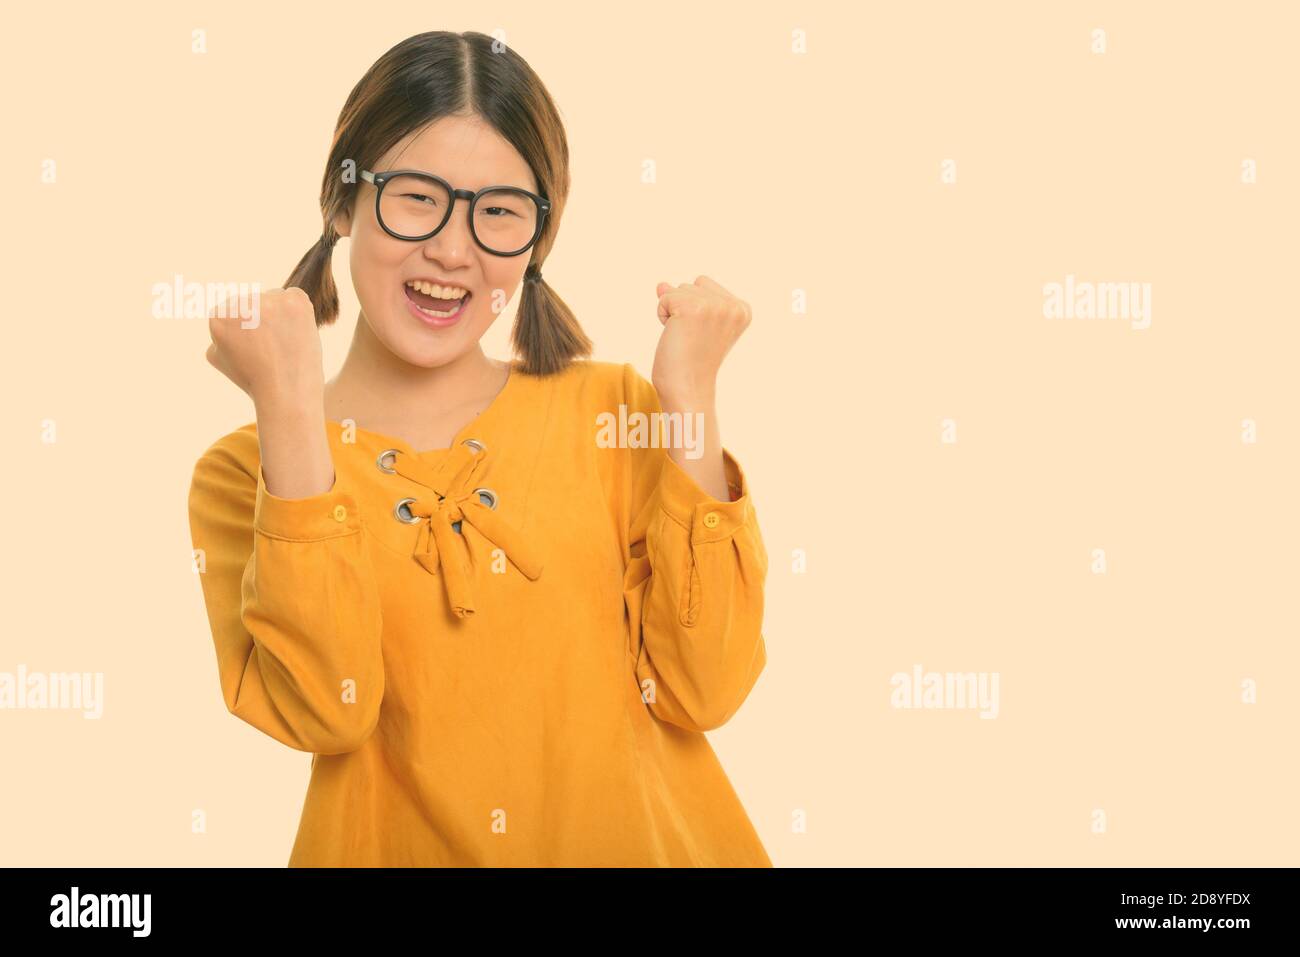 Photo studio d'une jeune femme asiatique heureuse qui applaudisse avec les deux bras levés Banque D'Images